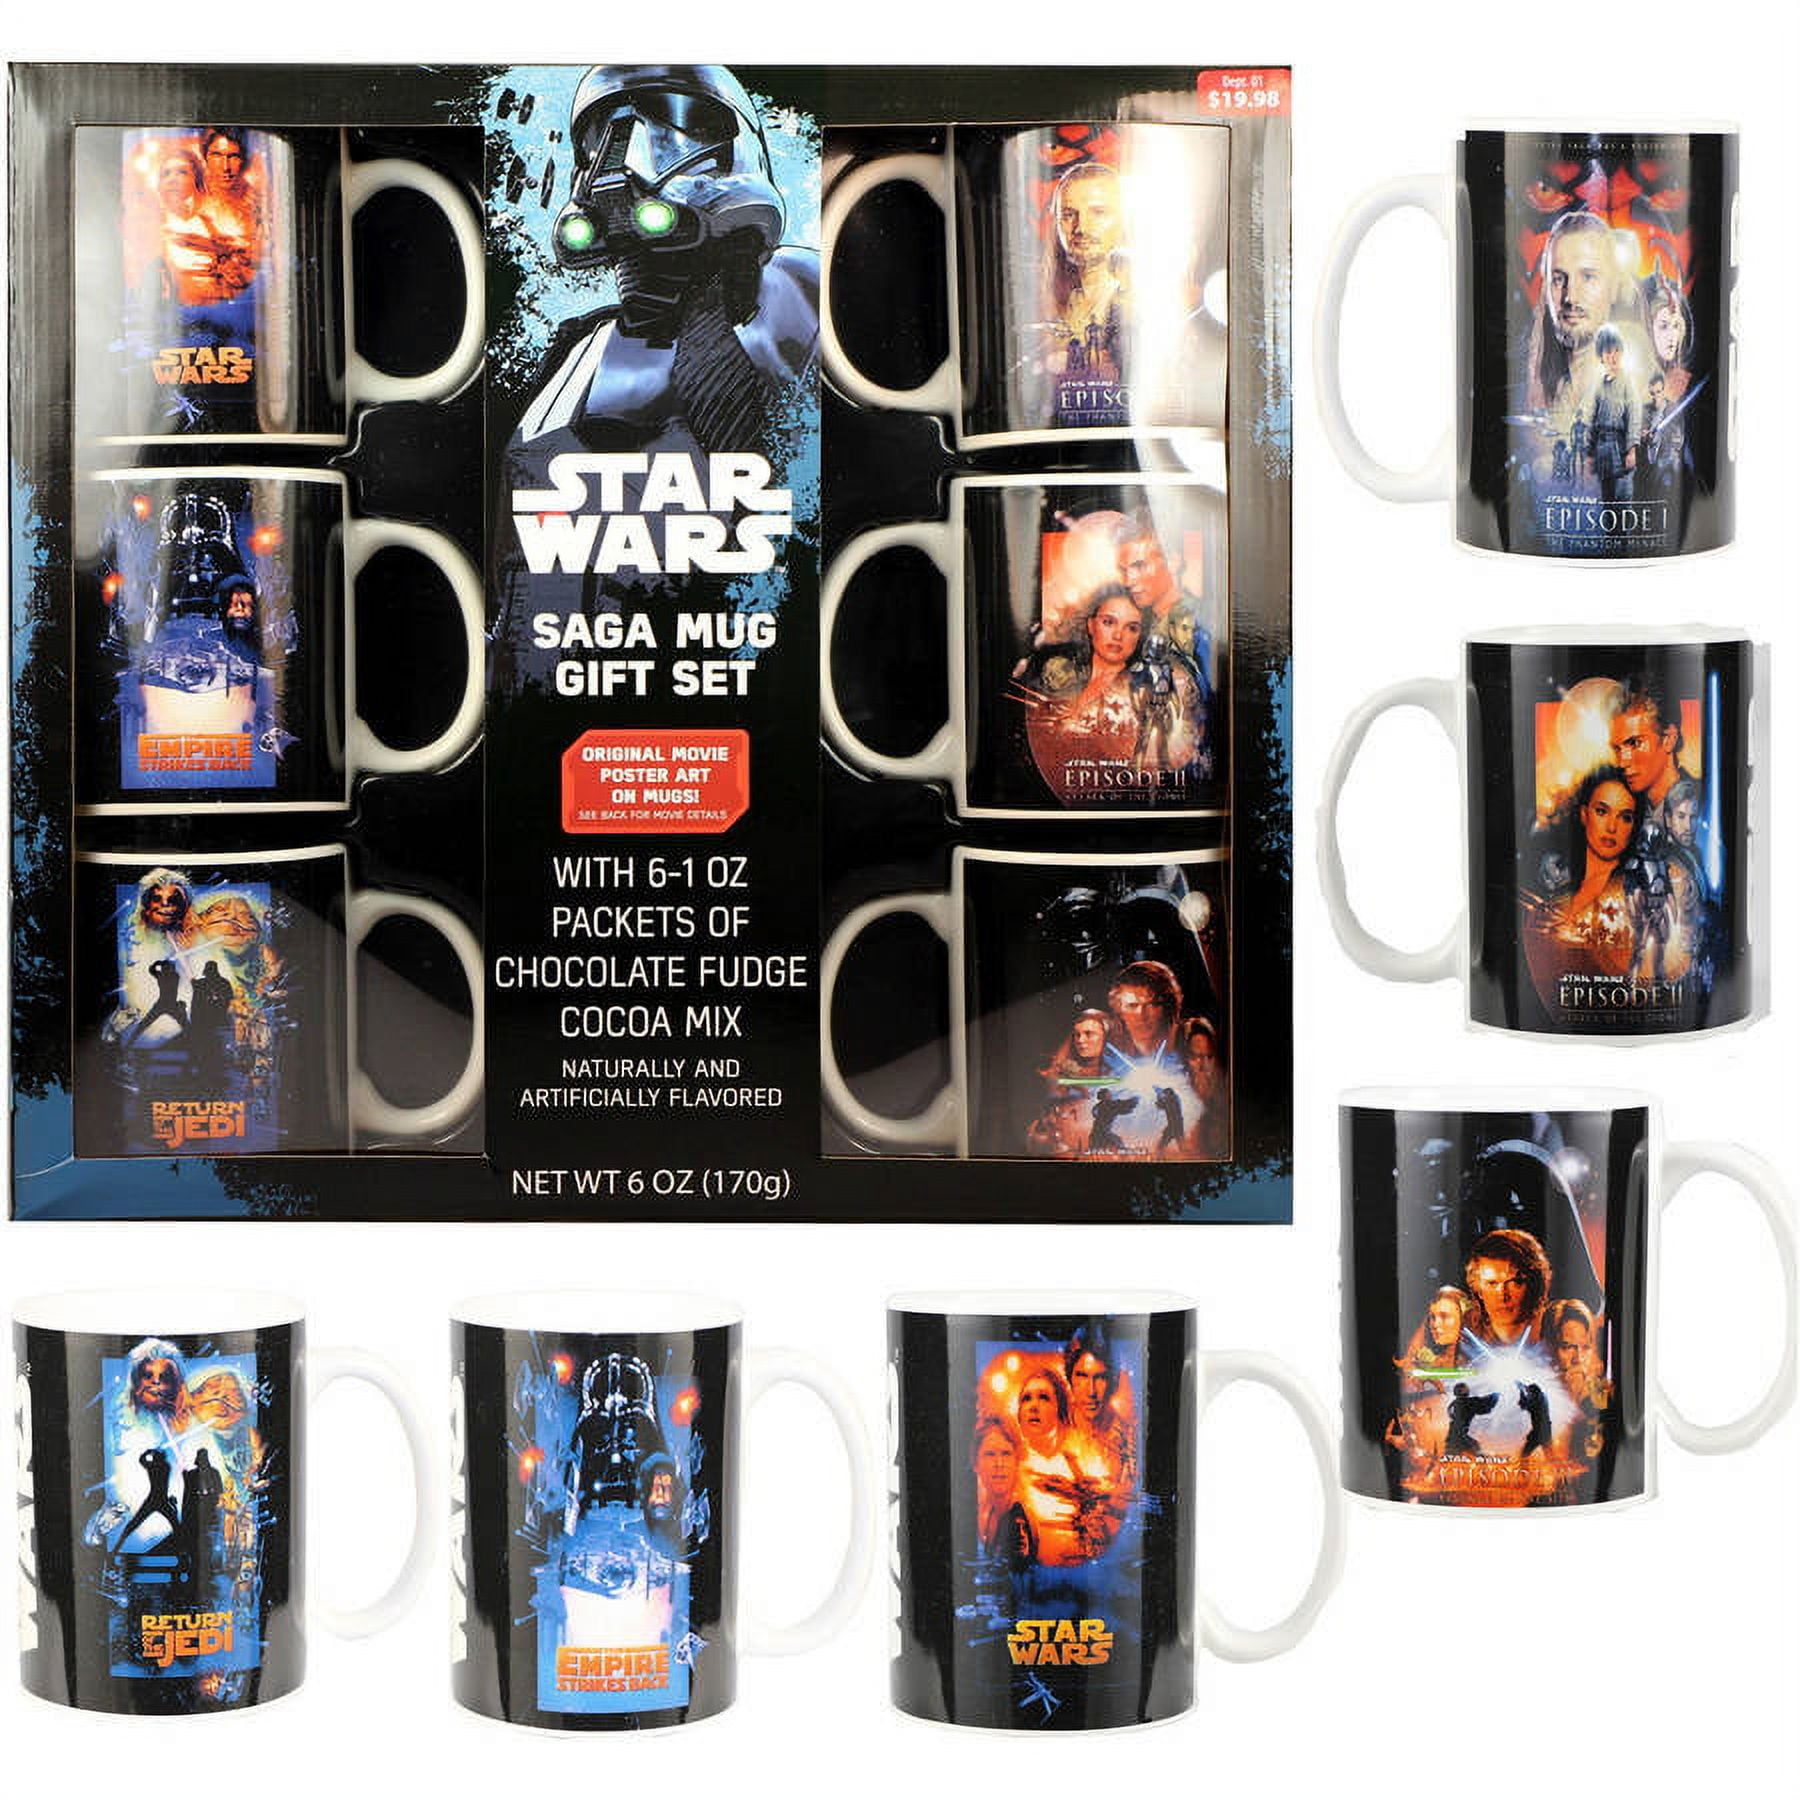 Star Wars Limited Edition 6 Mug Gift Set 2 Pack bundle 